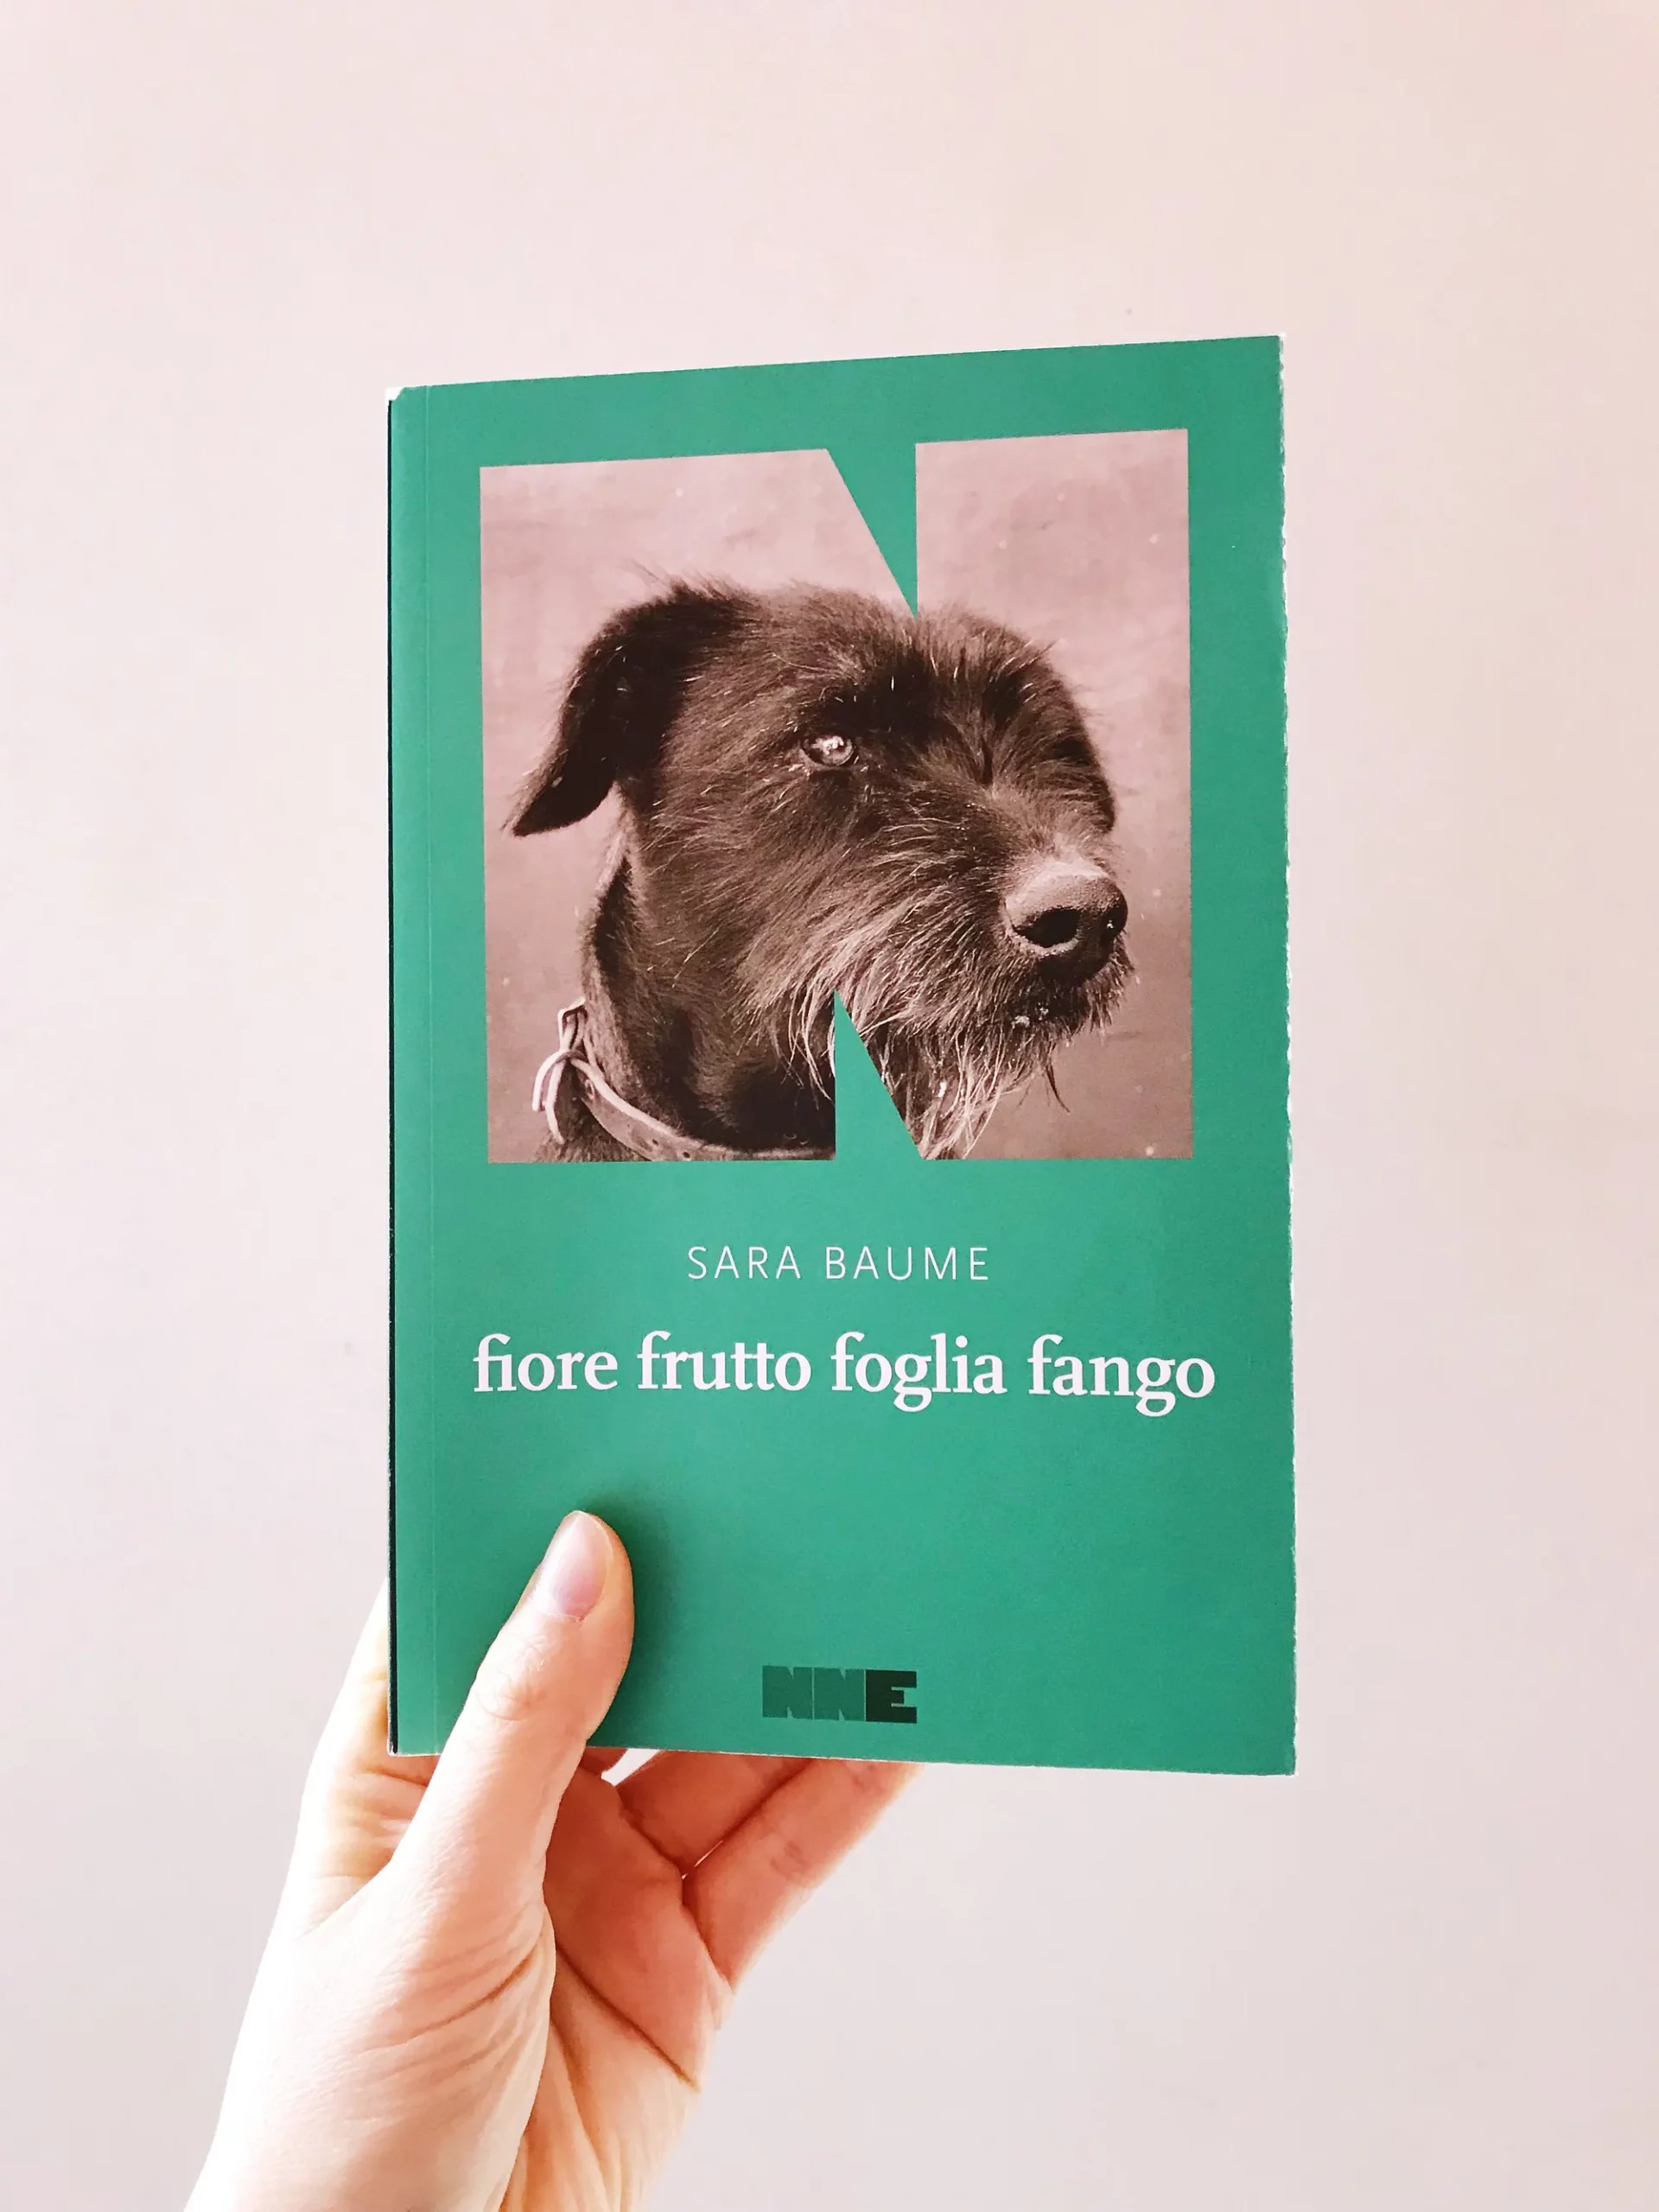 copertina del libro fio re frutto foglia fango con un cane nero di profilo